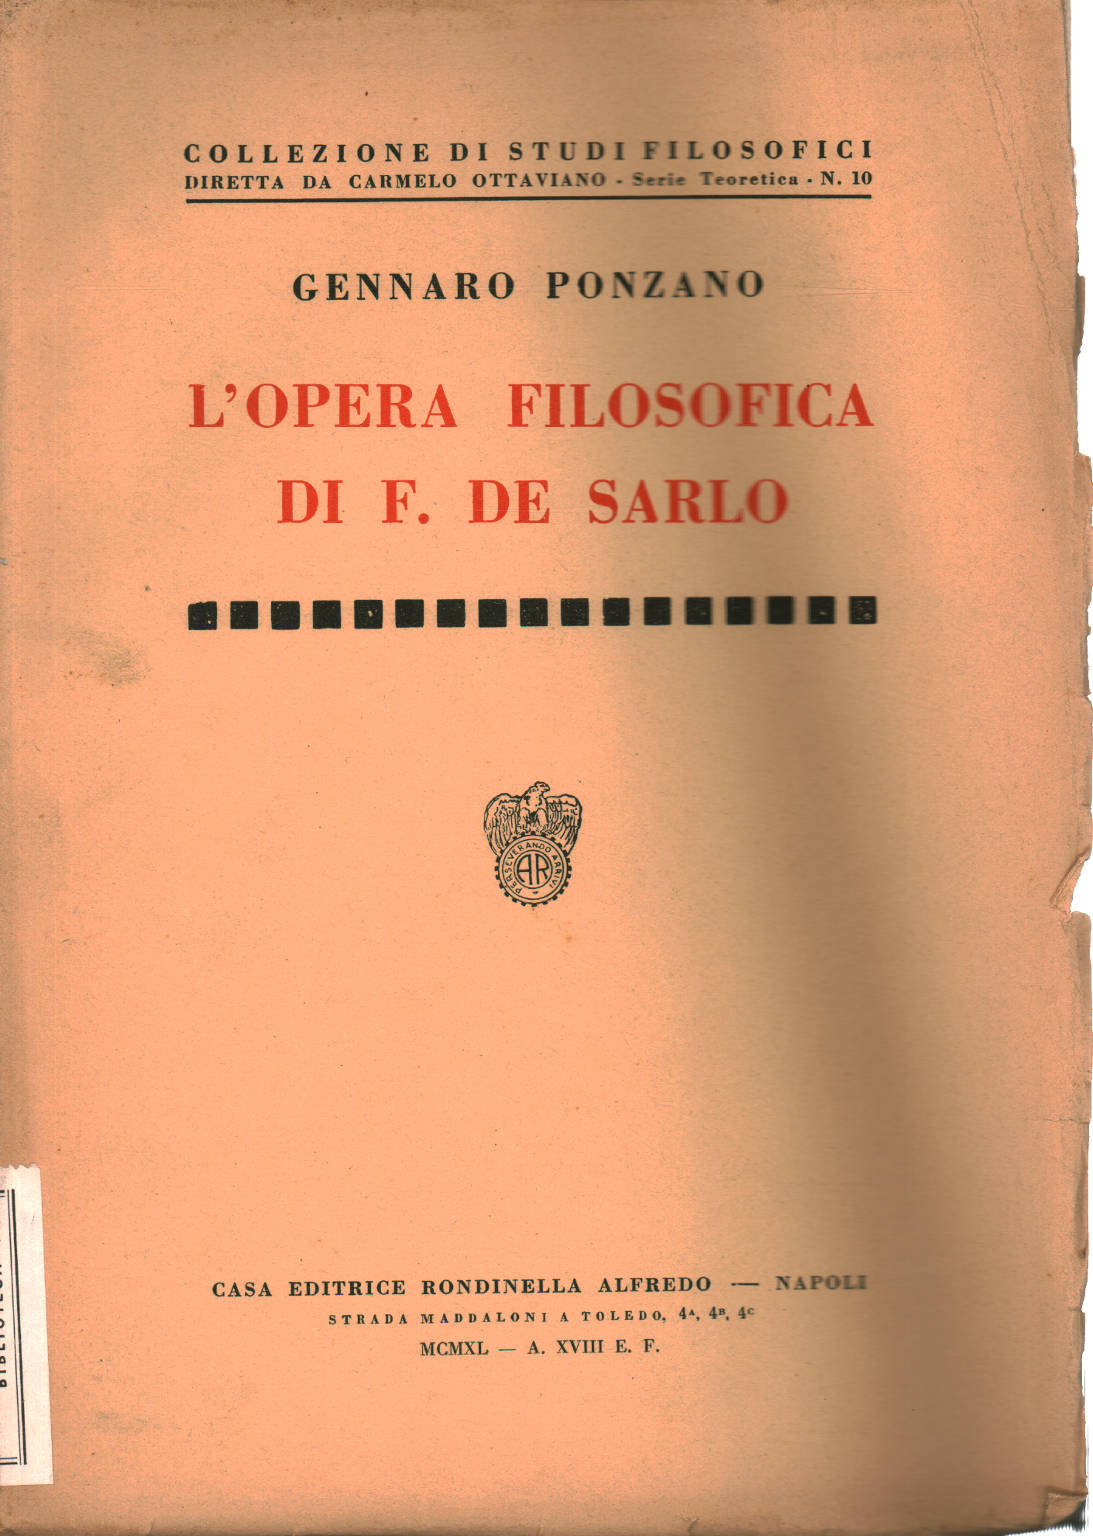 Das philosophische Werk von F.de Sarlo, Gennaro Ponzano